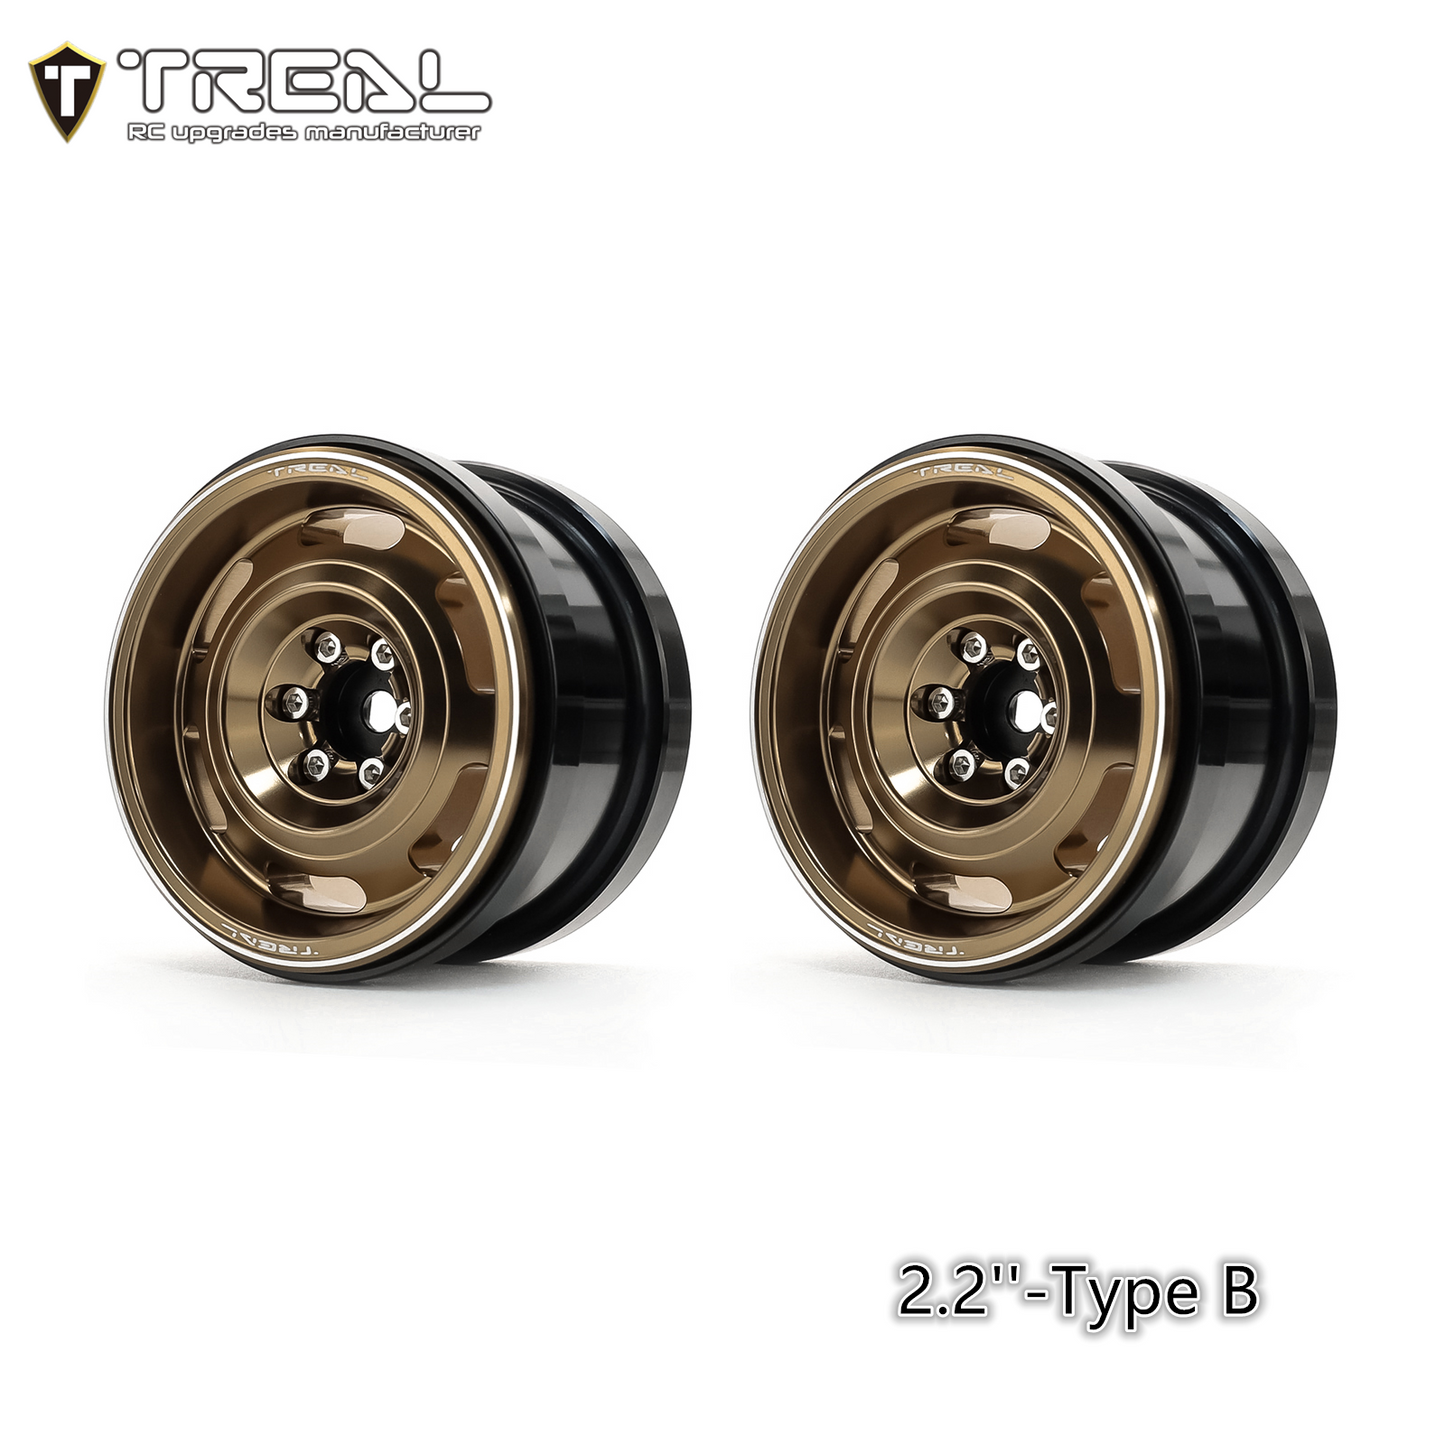 Treal Aluminium 2.2 Beadlock Wheels Rims(2)pcs Vintage Wheel Fit RC Crawler Mud Truck 2.2 Tires -Type B